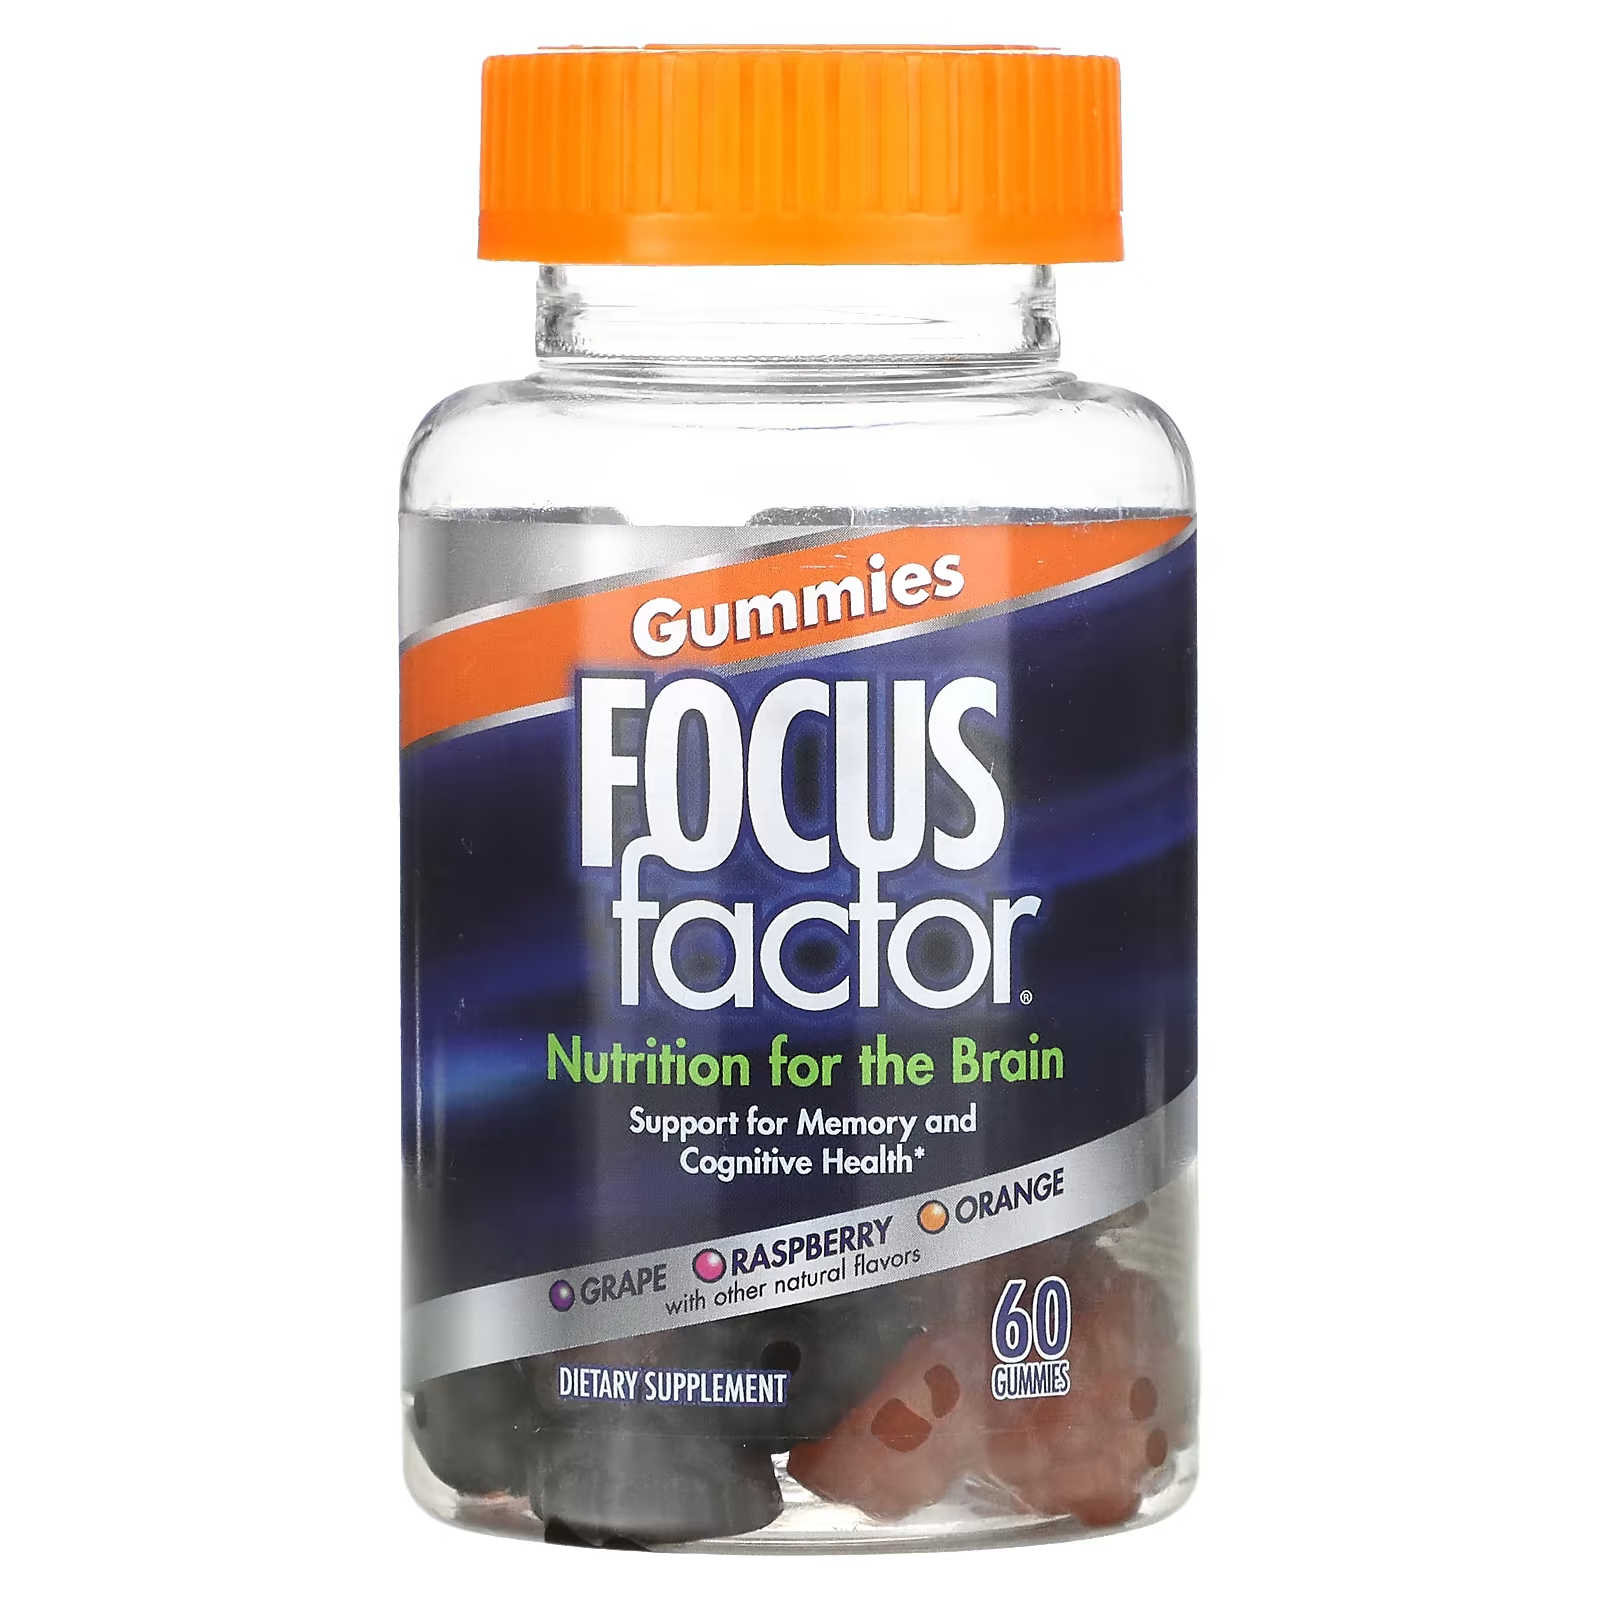 Пищевая добавка Focus Factor Nutrition For The Brain виноград, малина, апельсин, 60 жевательных таблеток focus factor calm focus клубника 60 жевательных таблеток